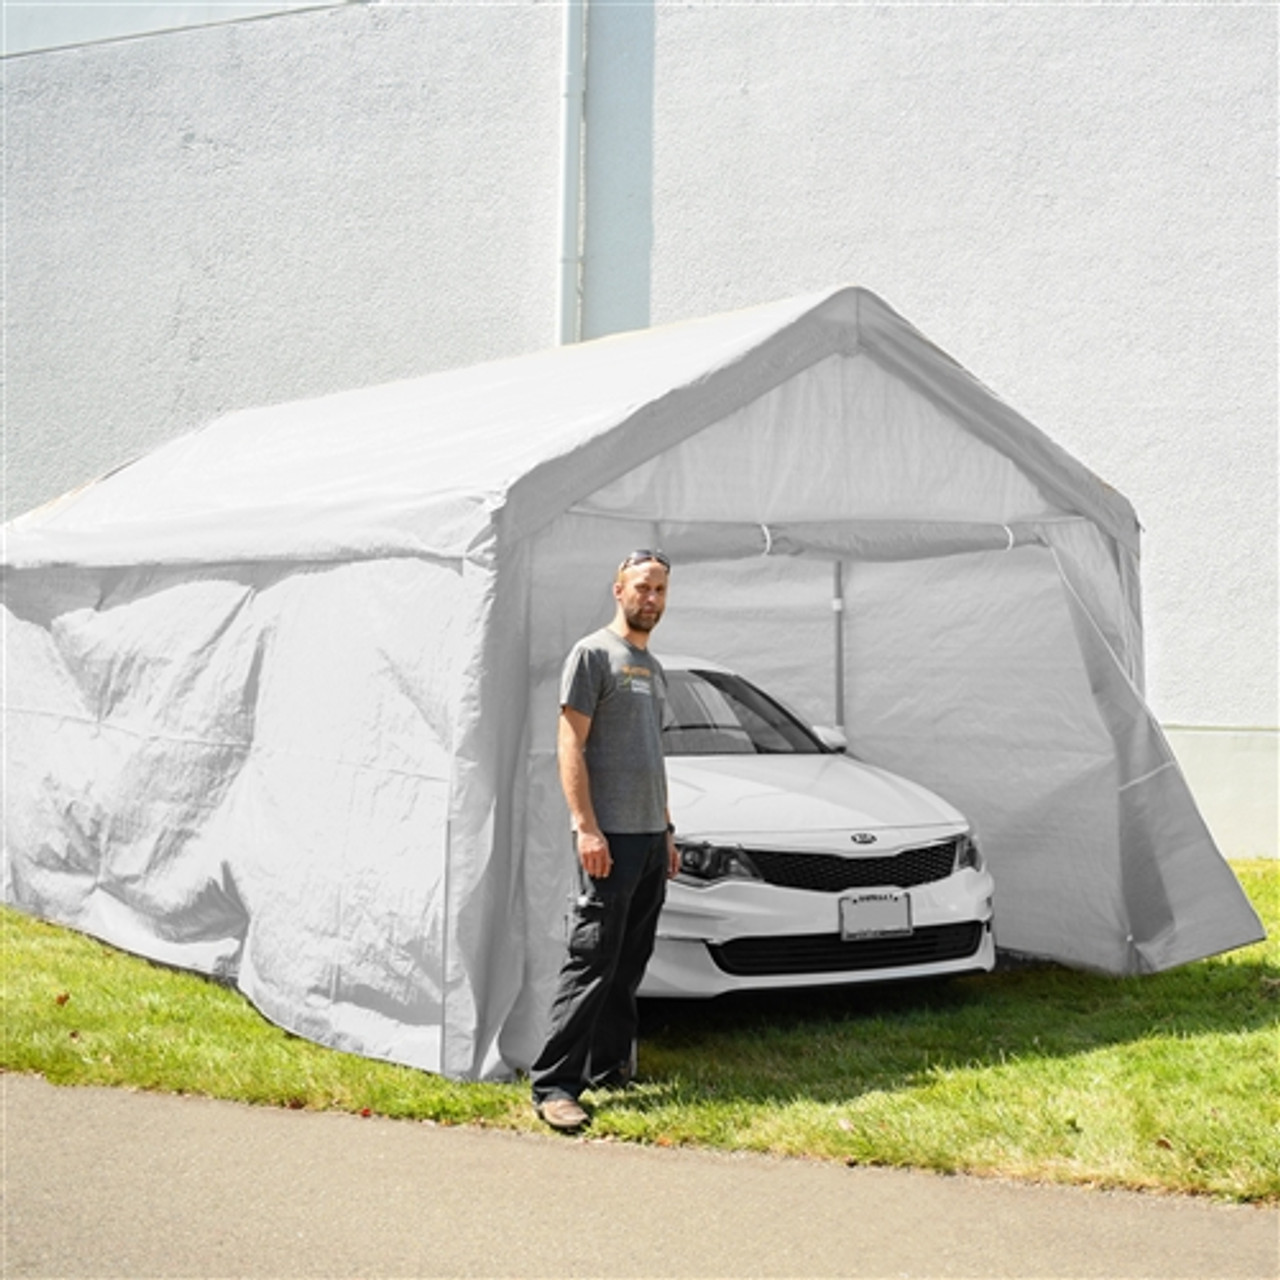 Outdoor Canopy Carport Tent - 10 X 20 FT - Beige - ALEKO